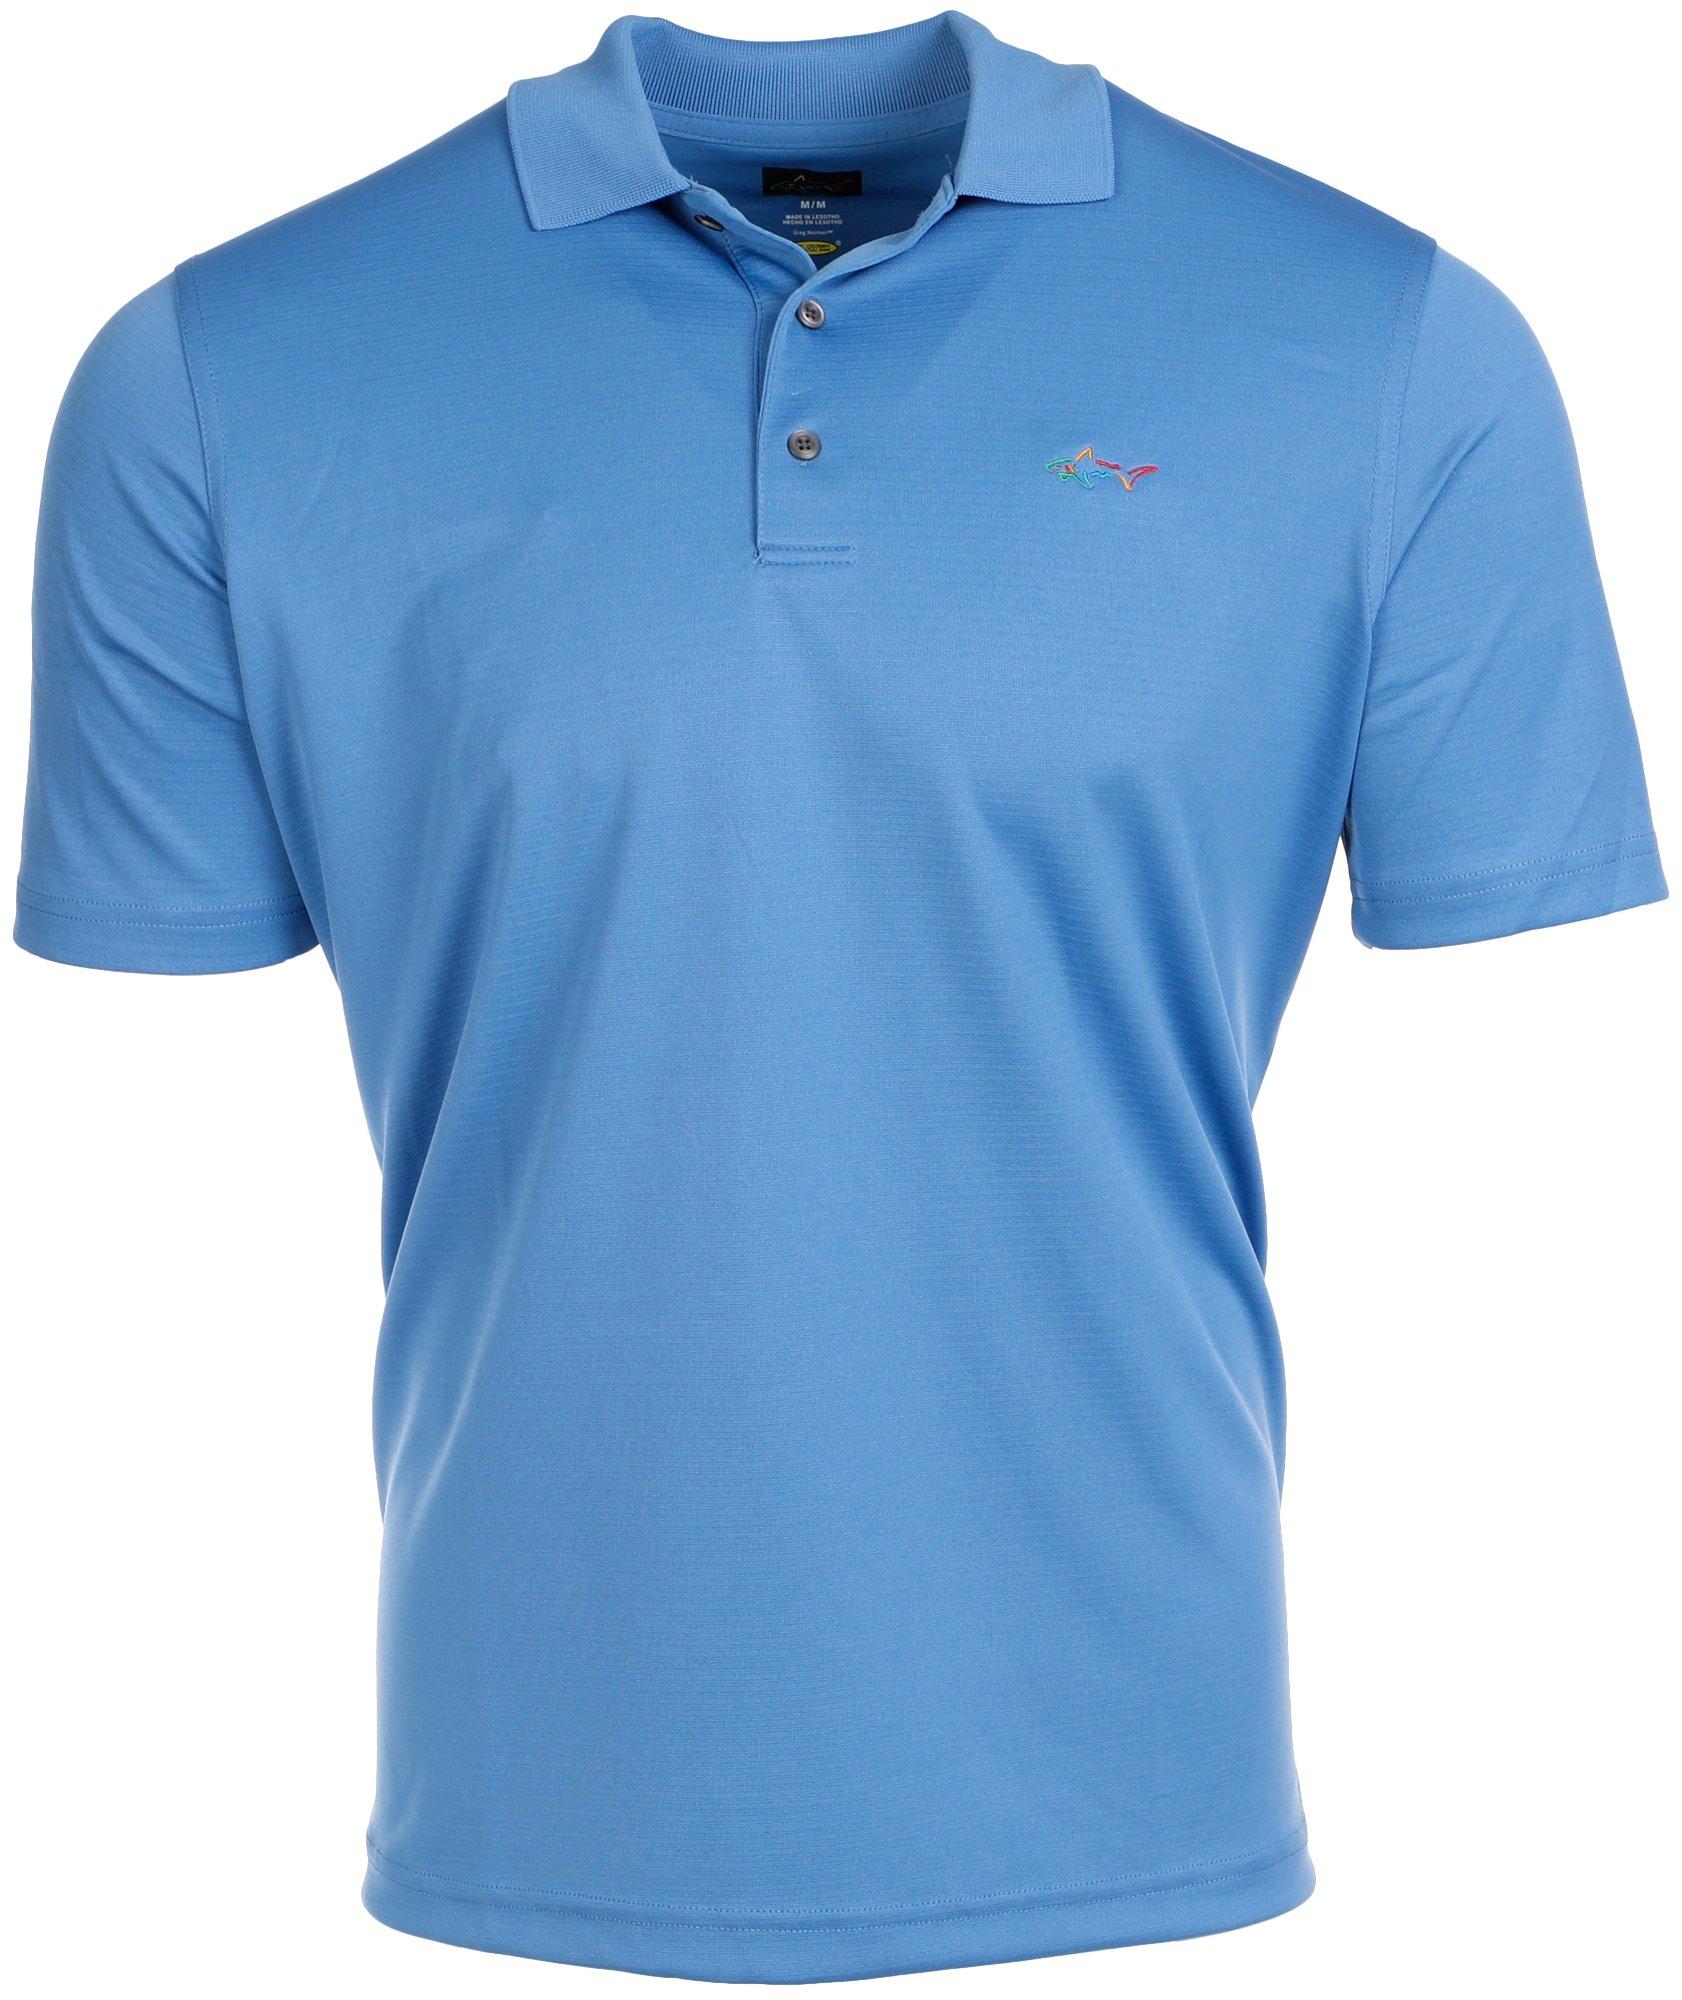 Men's Active Golf Polo Shirt